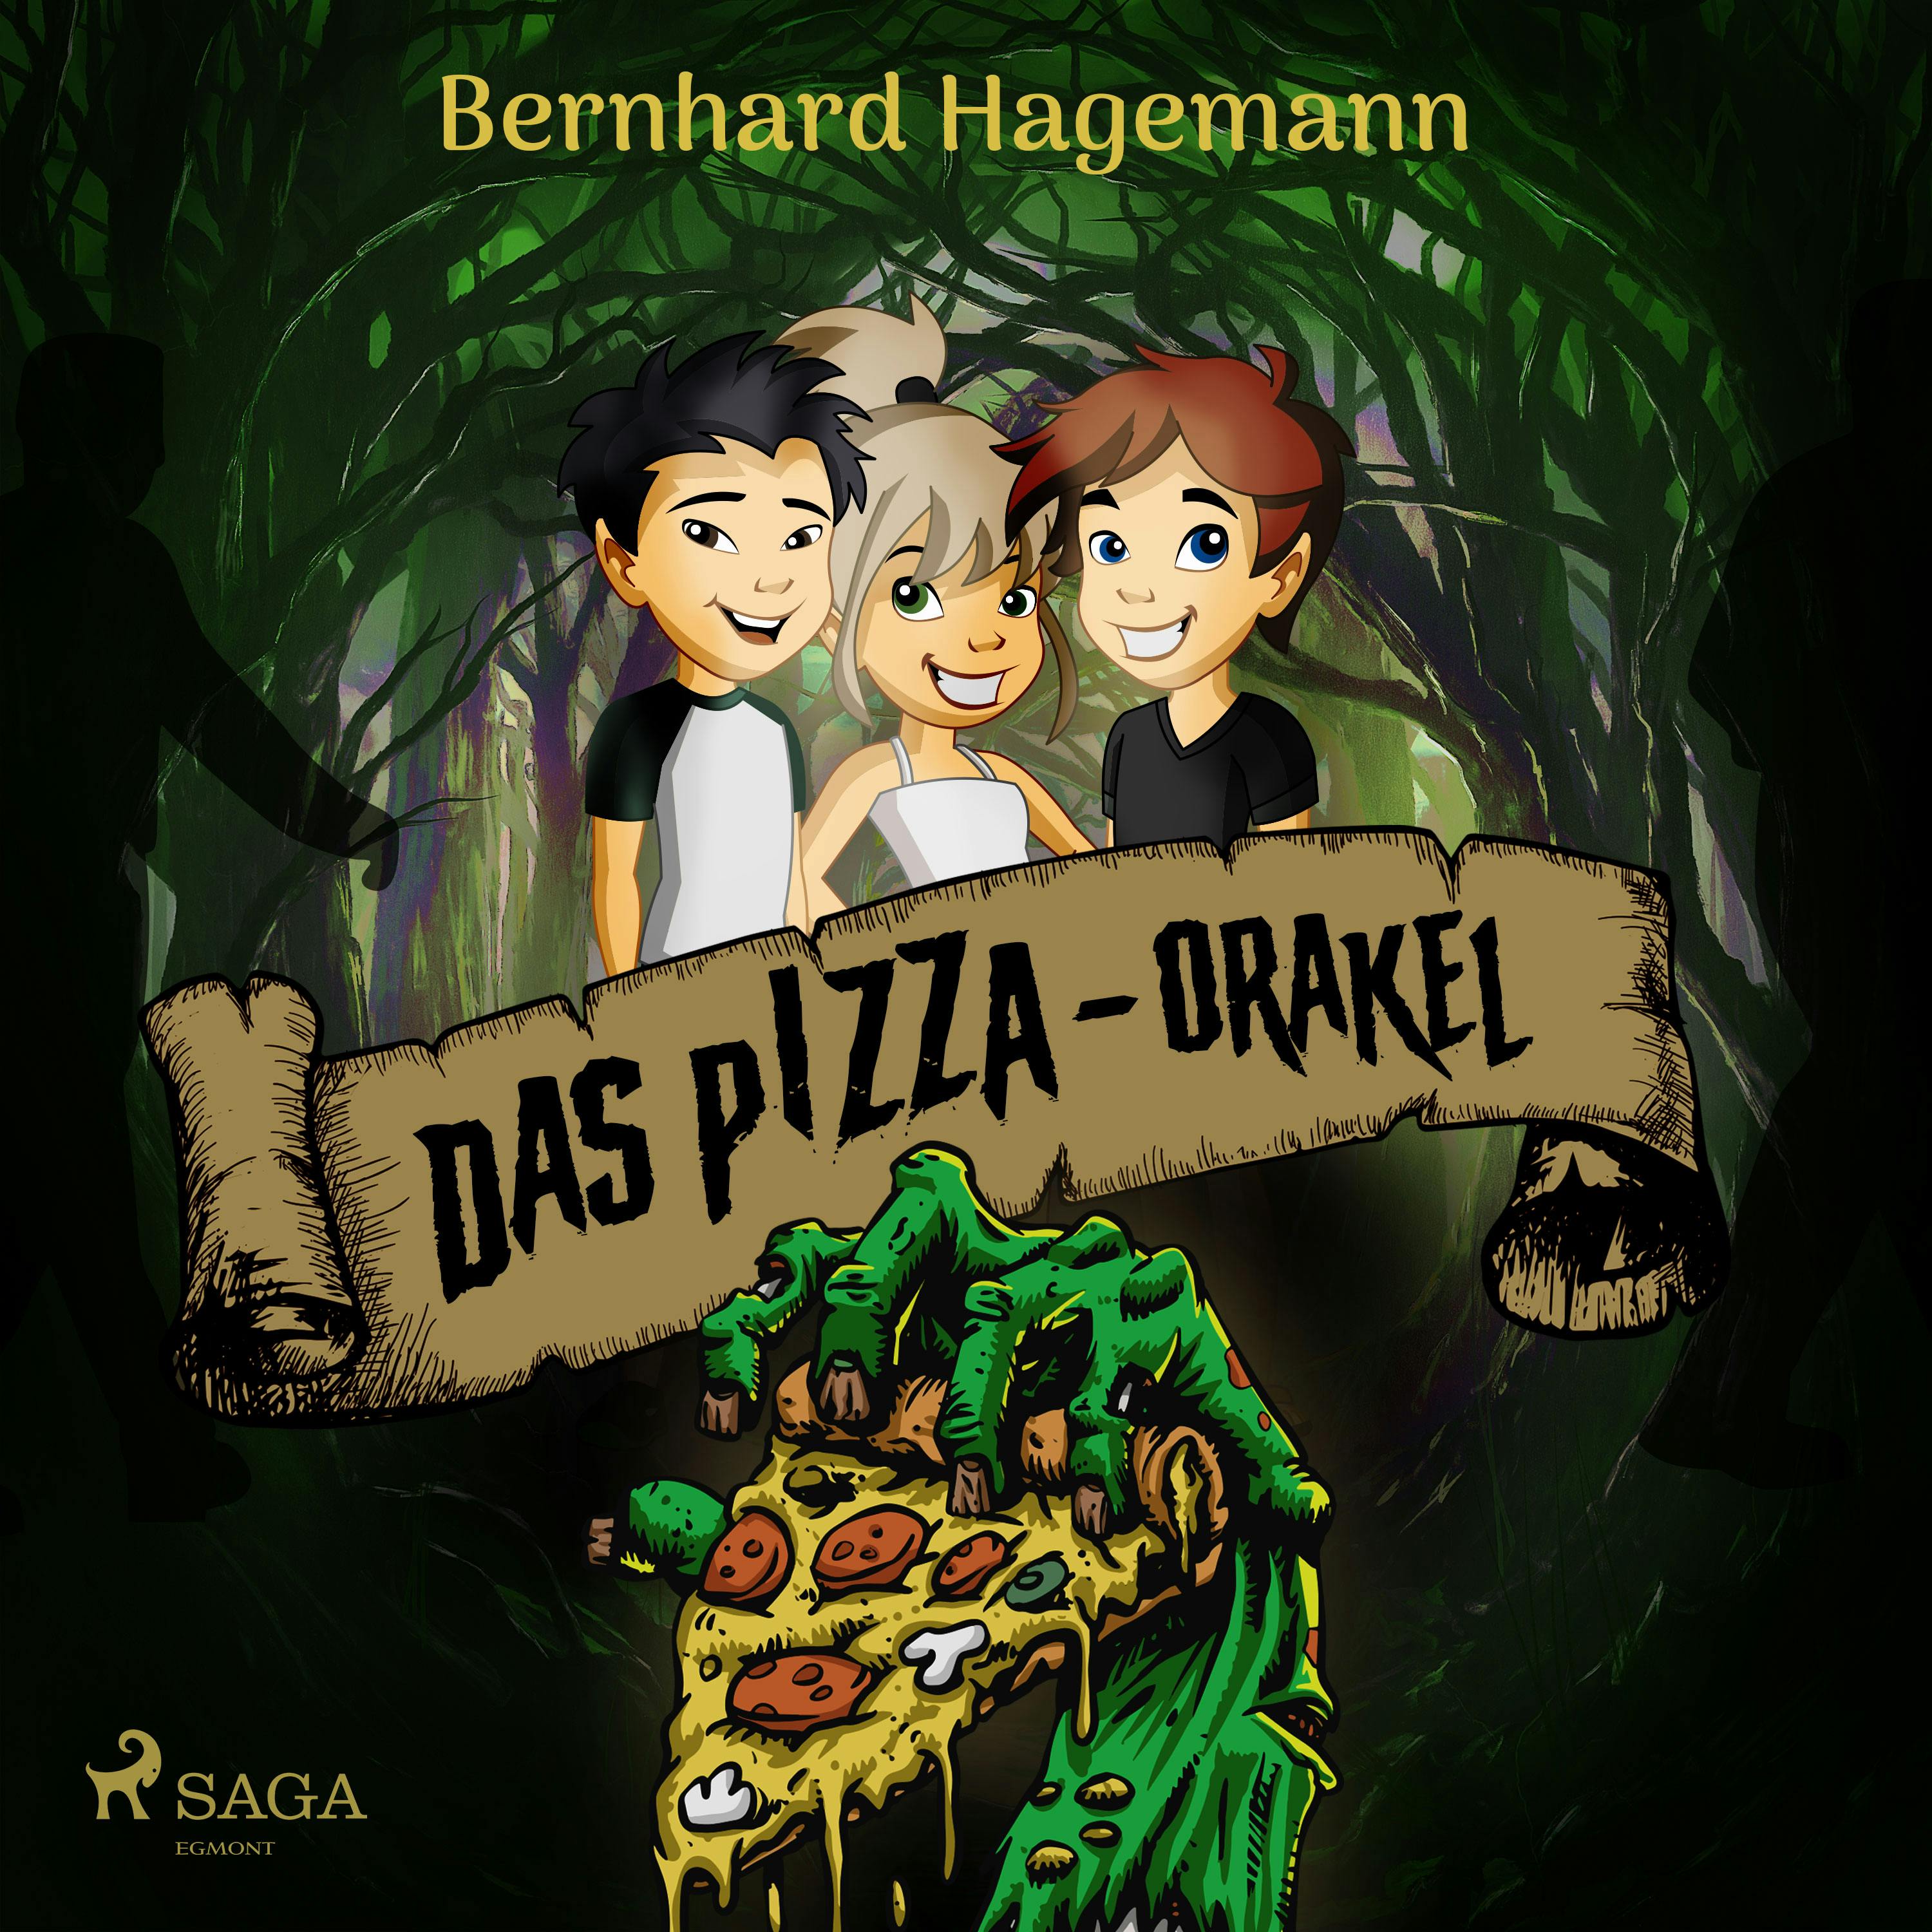 Das Pizza-Orakel - Bernhard Hagemann